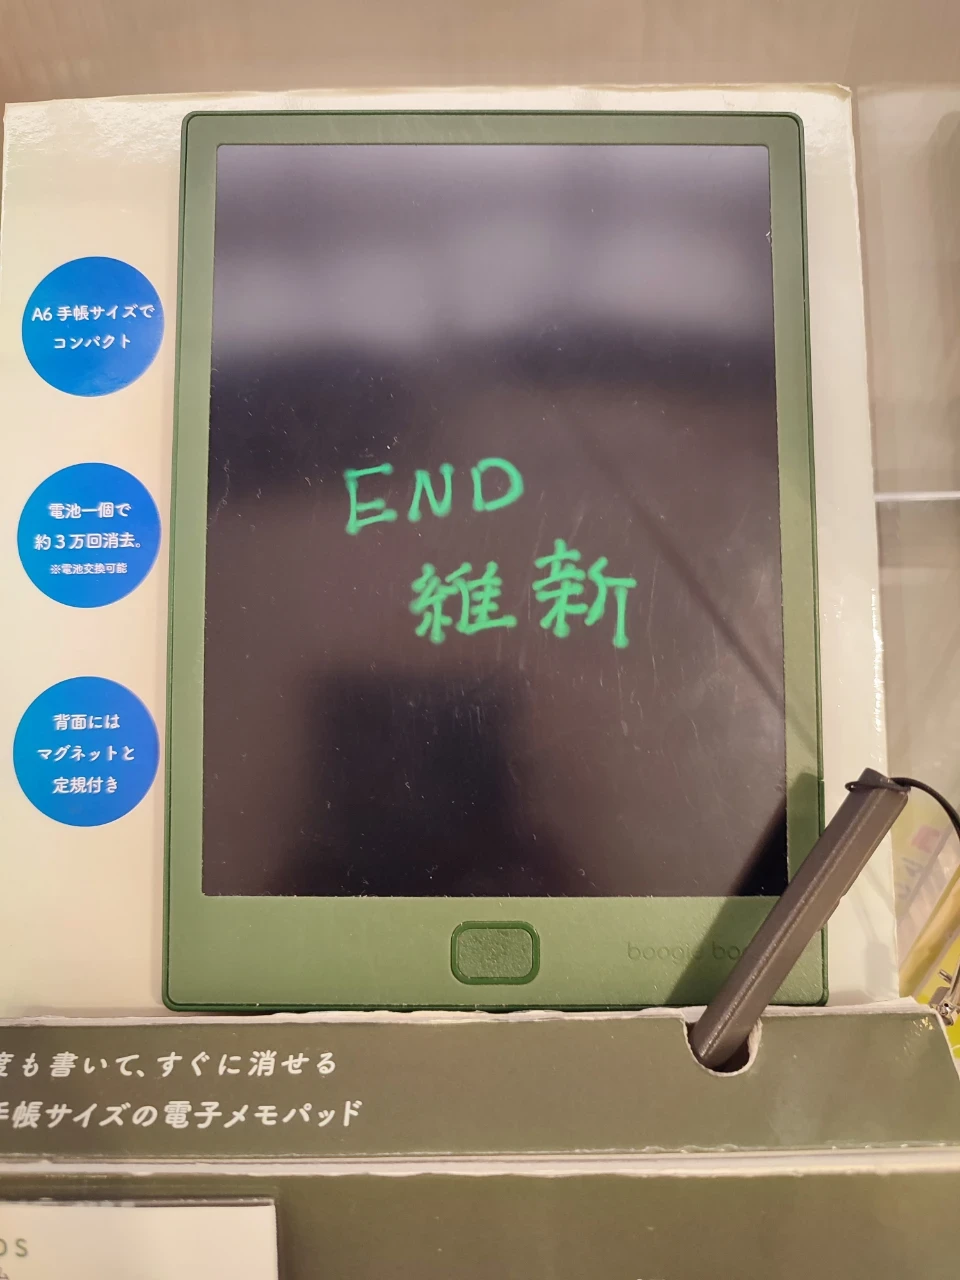 黒地に緑の文字で「END維新」と書かれた電子メモ帳の写真。